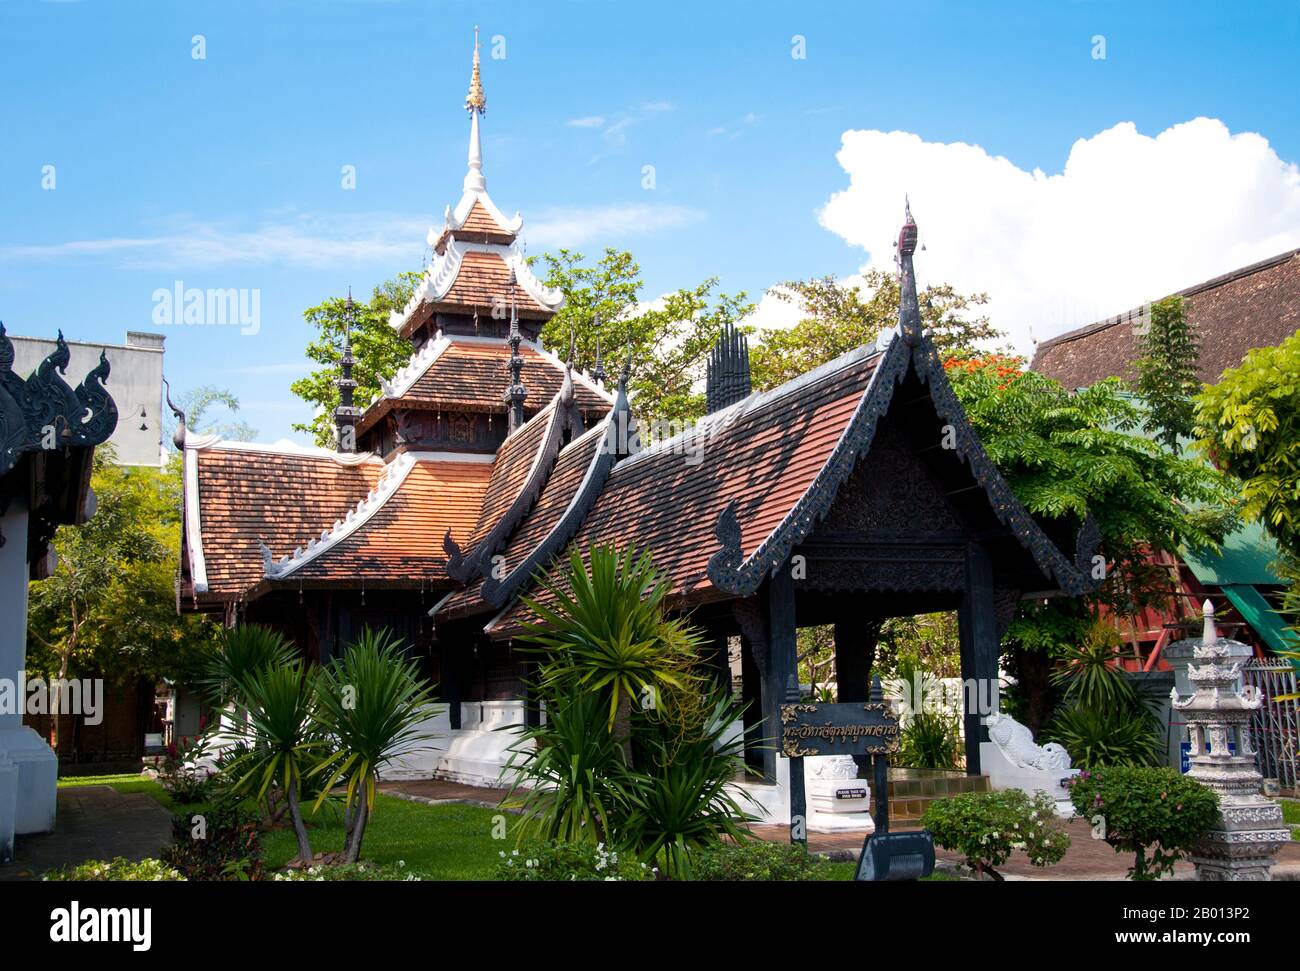 Thailand: Phra Viharn Chatumuk Boraphachan, Wat Chedi Luang, Chiang Mai. Wat Chedi Luang übersetzt wörtlich aus dem Thailändischen als ‘Kloster der Großen Stupa’. Der Bau des Tempels begann am Ende des 14. Jahrhunderts, als das Königreich Lan Na in seiner Blüte stand. König Saen Muang Ma (1385-1401) beabsichtigte es als Ort eines großen Reliquienschreines, um die Asche seines Vaters, König Ku Na (1355-85), zu vereinigen. Heute ist es der Ort der Lak Muang oder Stadtsäule. Die jährliche Inthakin-Zeremonie findet innerhalb der Grenzen des Tempels statt. Stockfoto